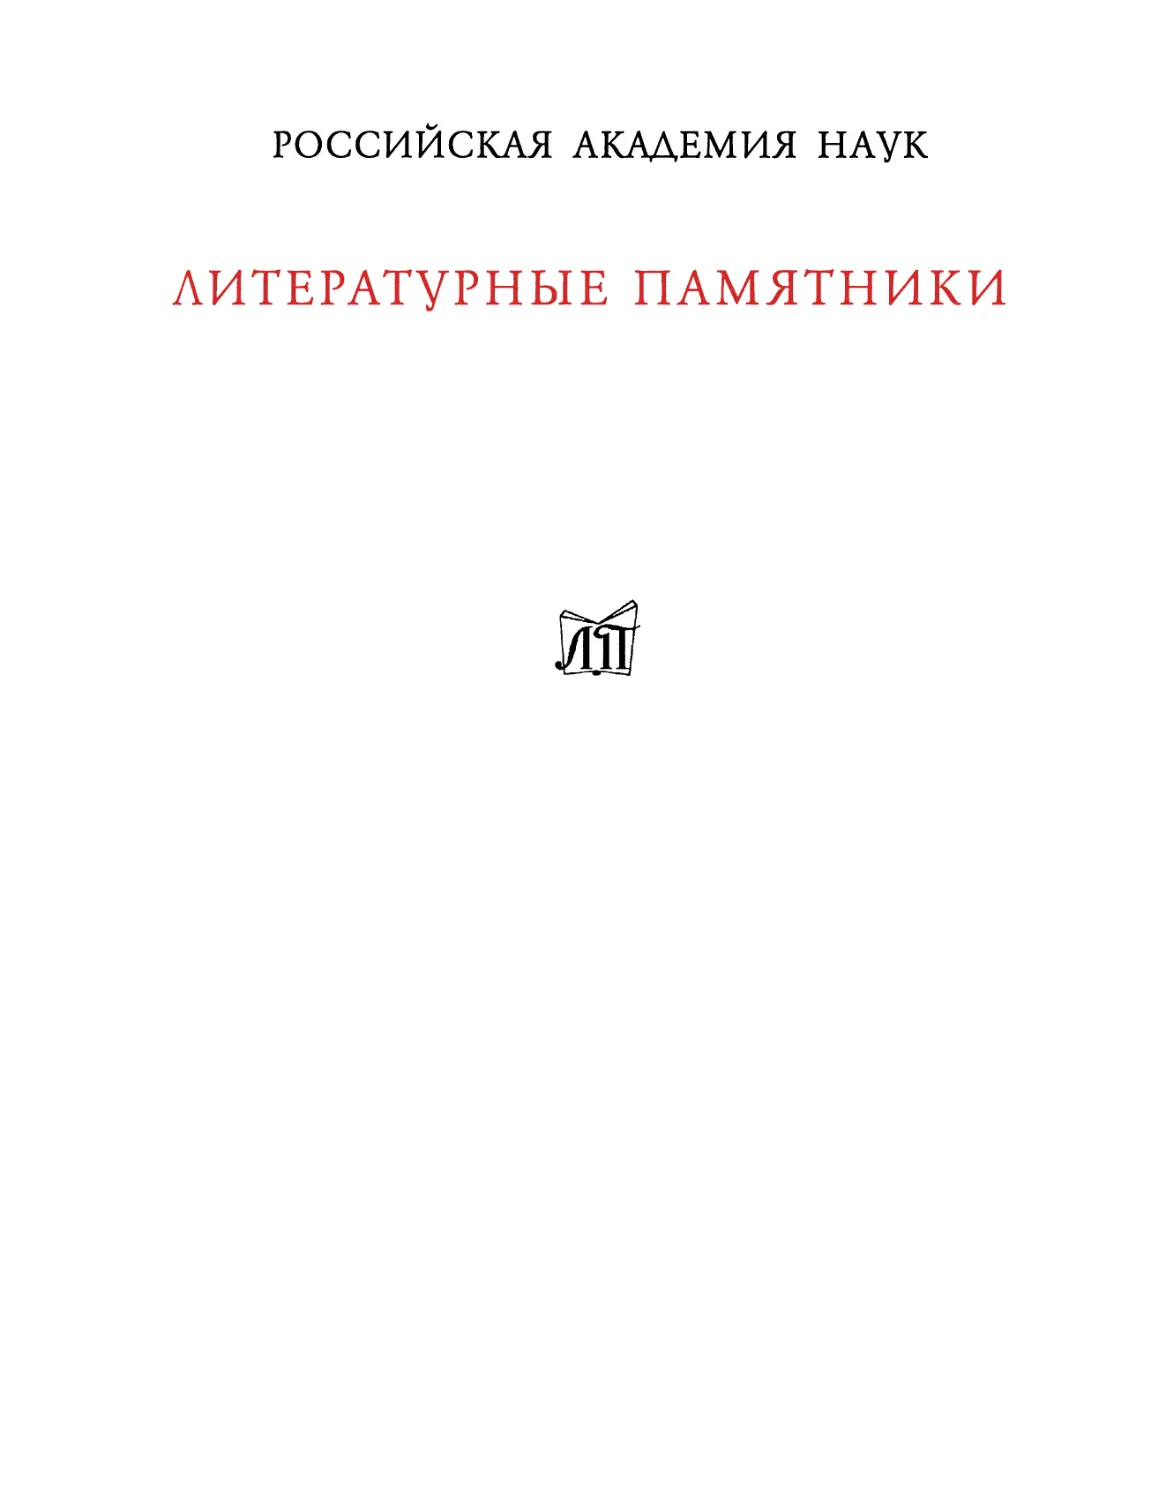 Гиляров-Платонов Н.П. Из пережитого. Автобиографические воспоминания. Т.2 - 2009